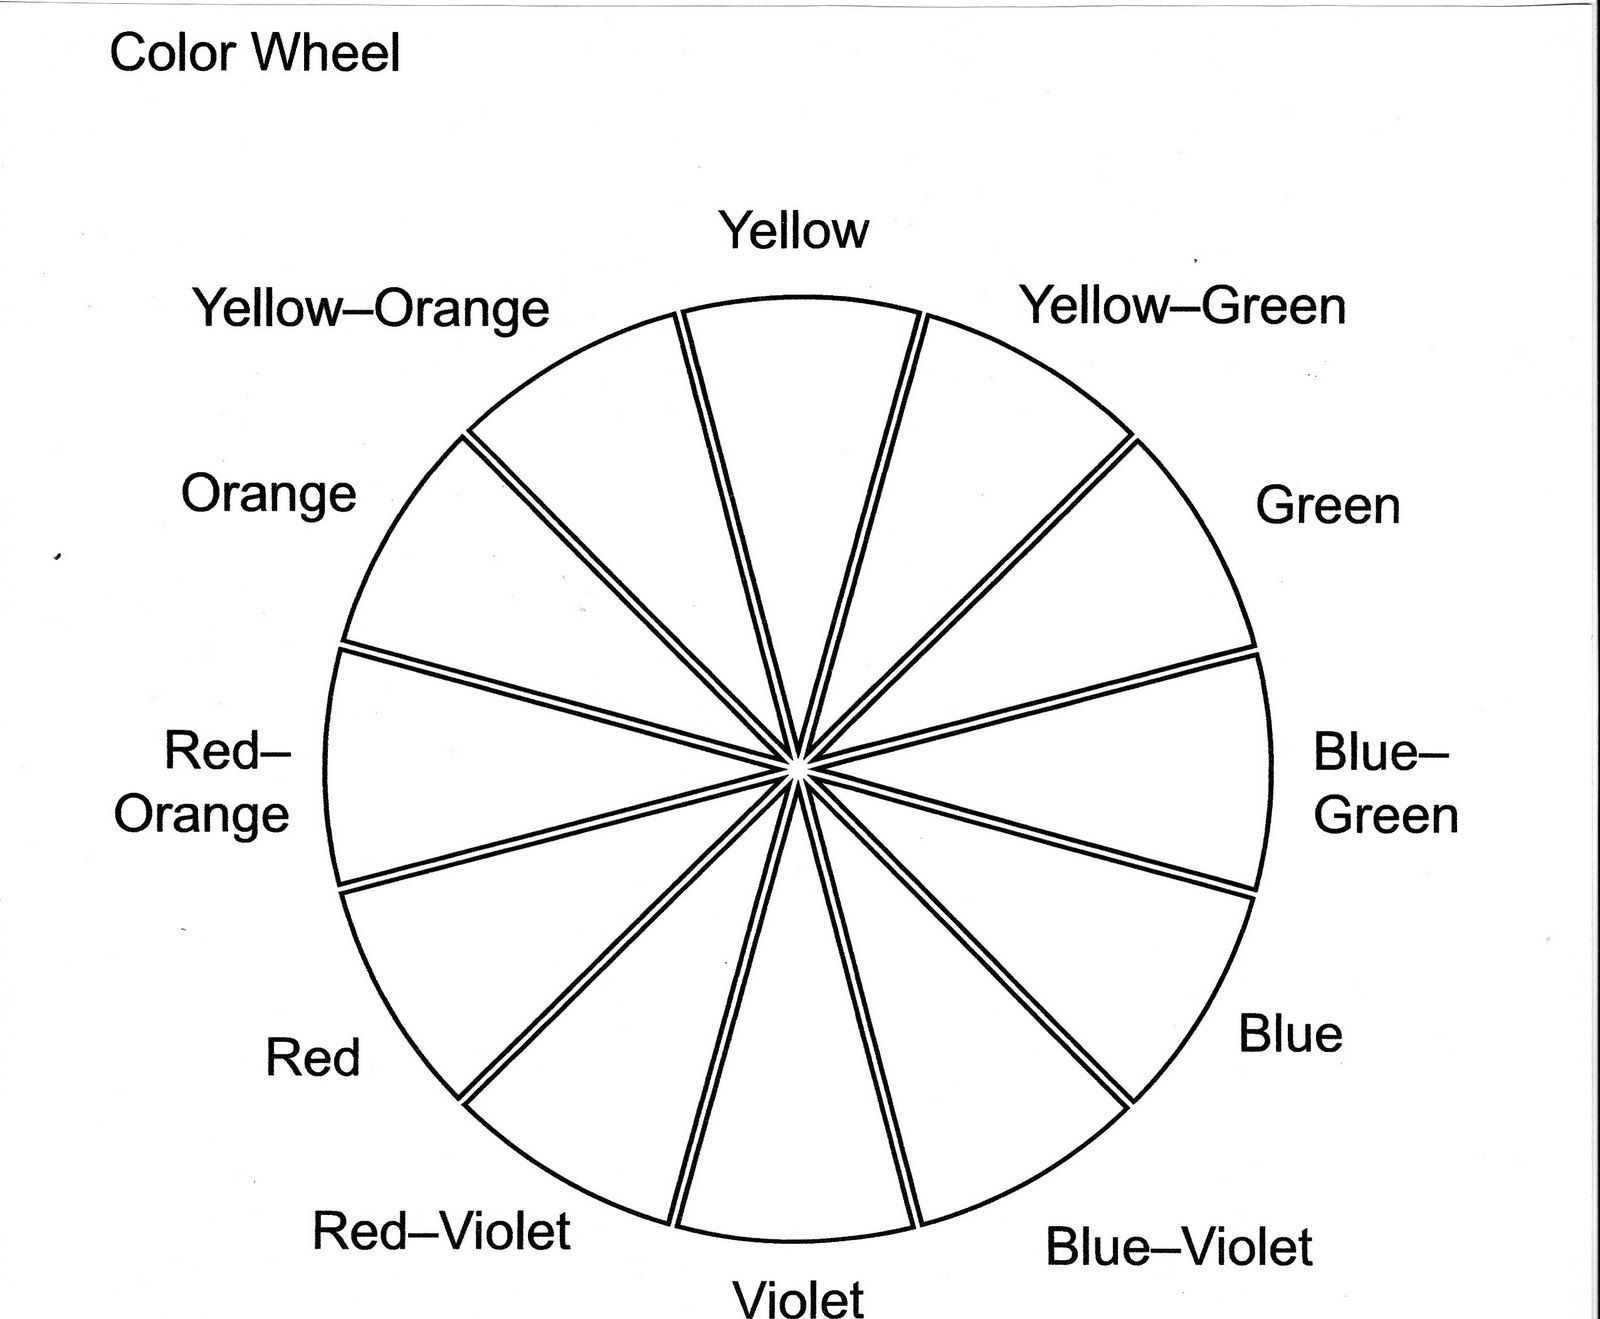 Color Wheel Worksheet Printable | Life Skills In 2019 | Color Wheel | Printable Color Wheel Worksheet